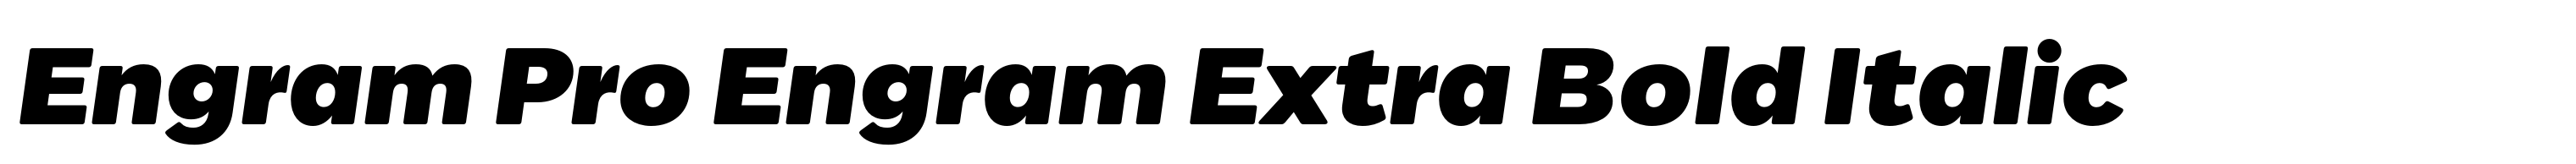 Engram Pro Engram Extra Bold Italic